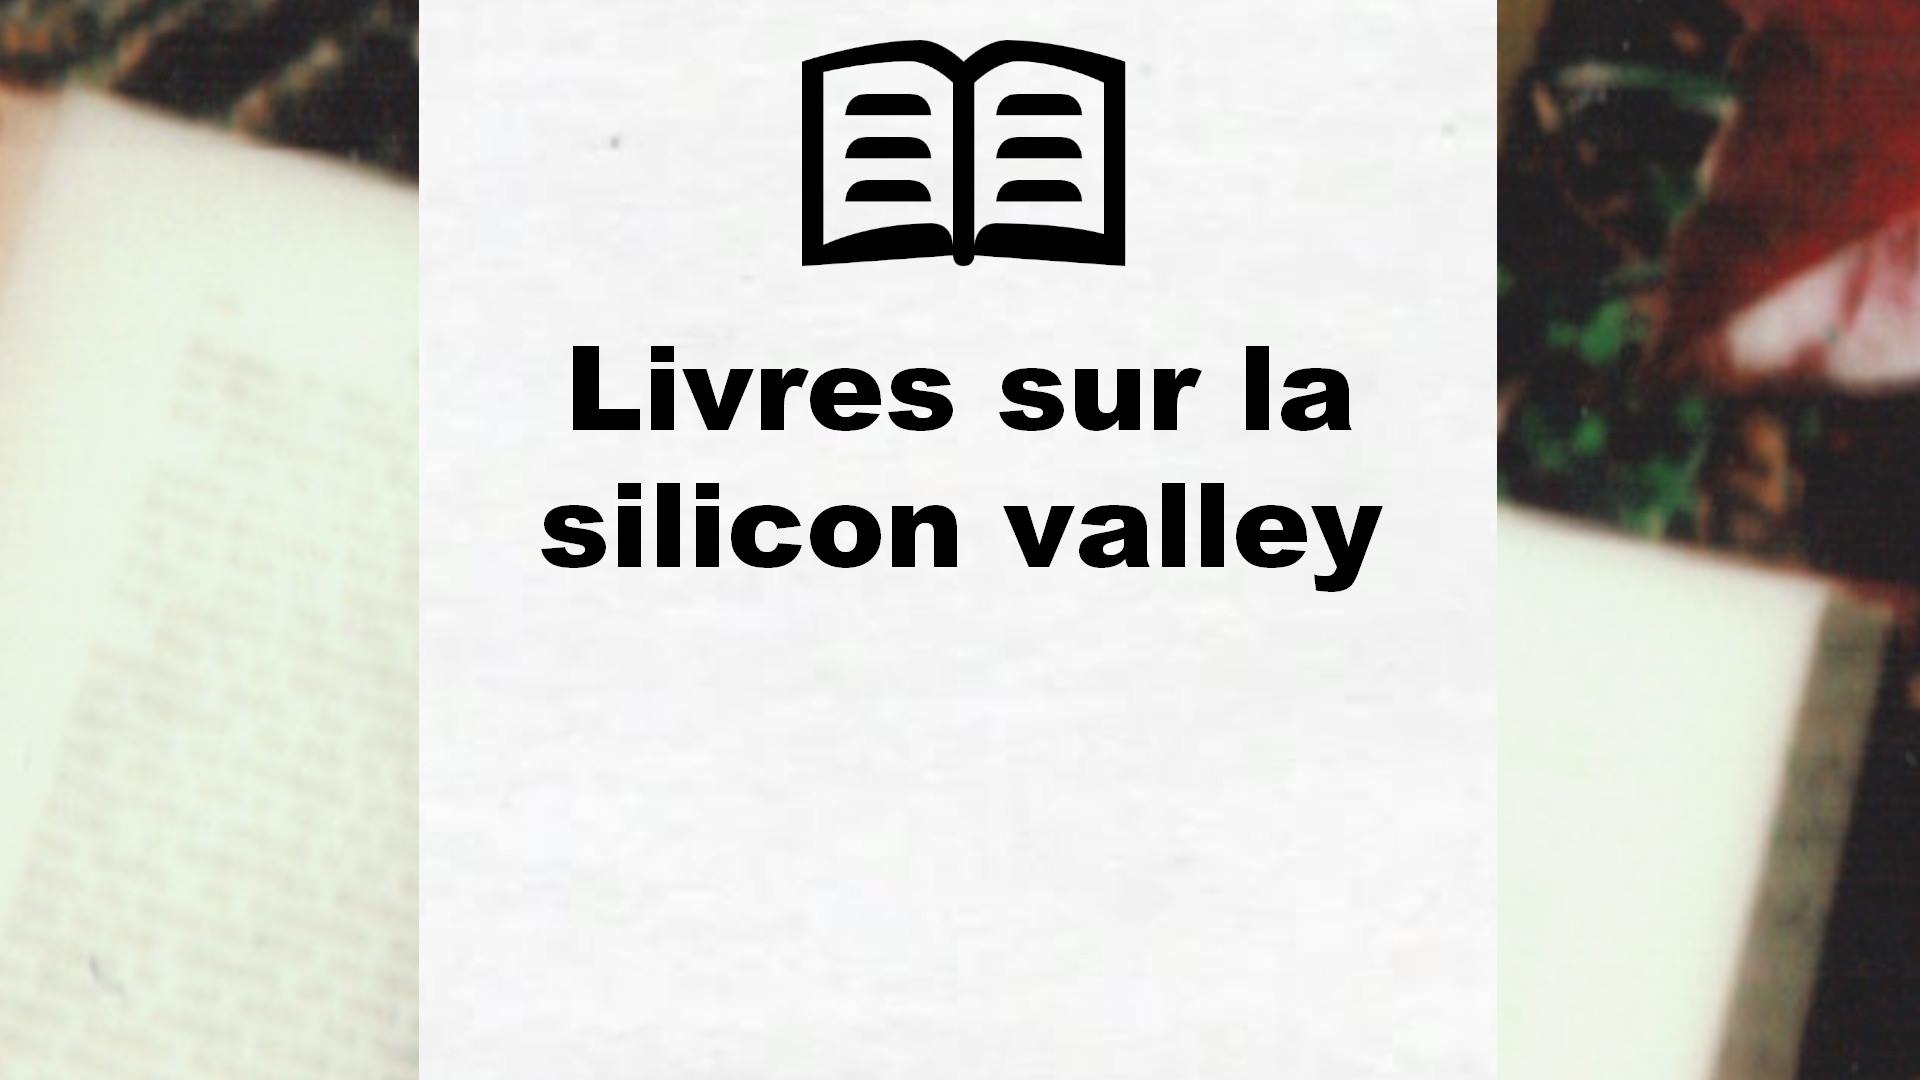 Livres sur la silicon valley